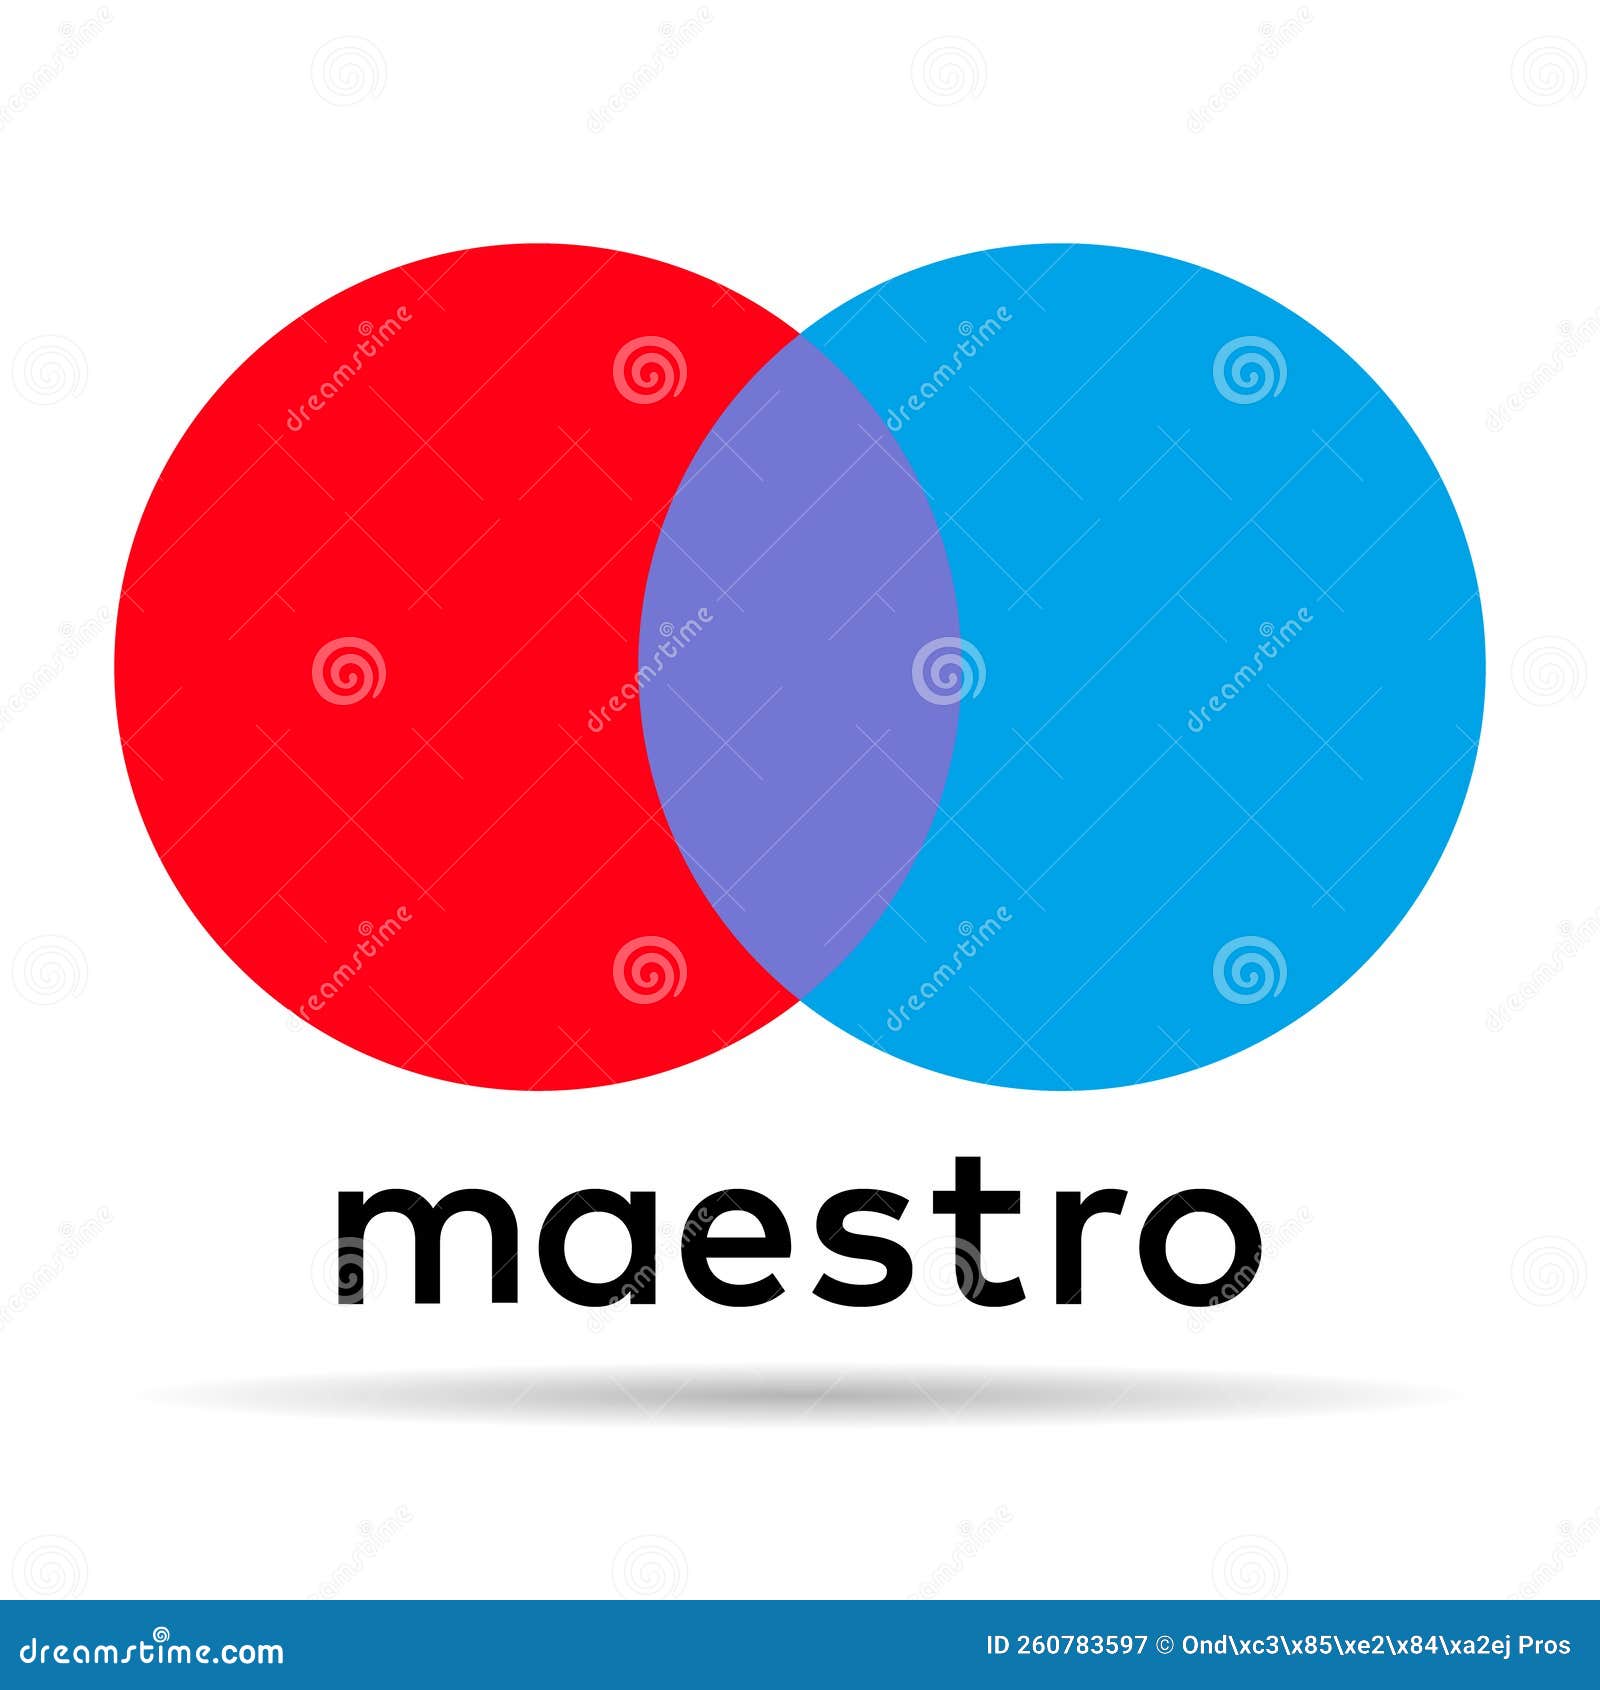 Maestro (debit card) - Wikipedia